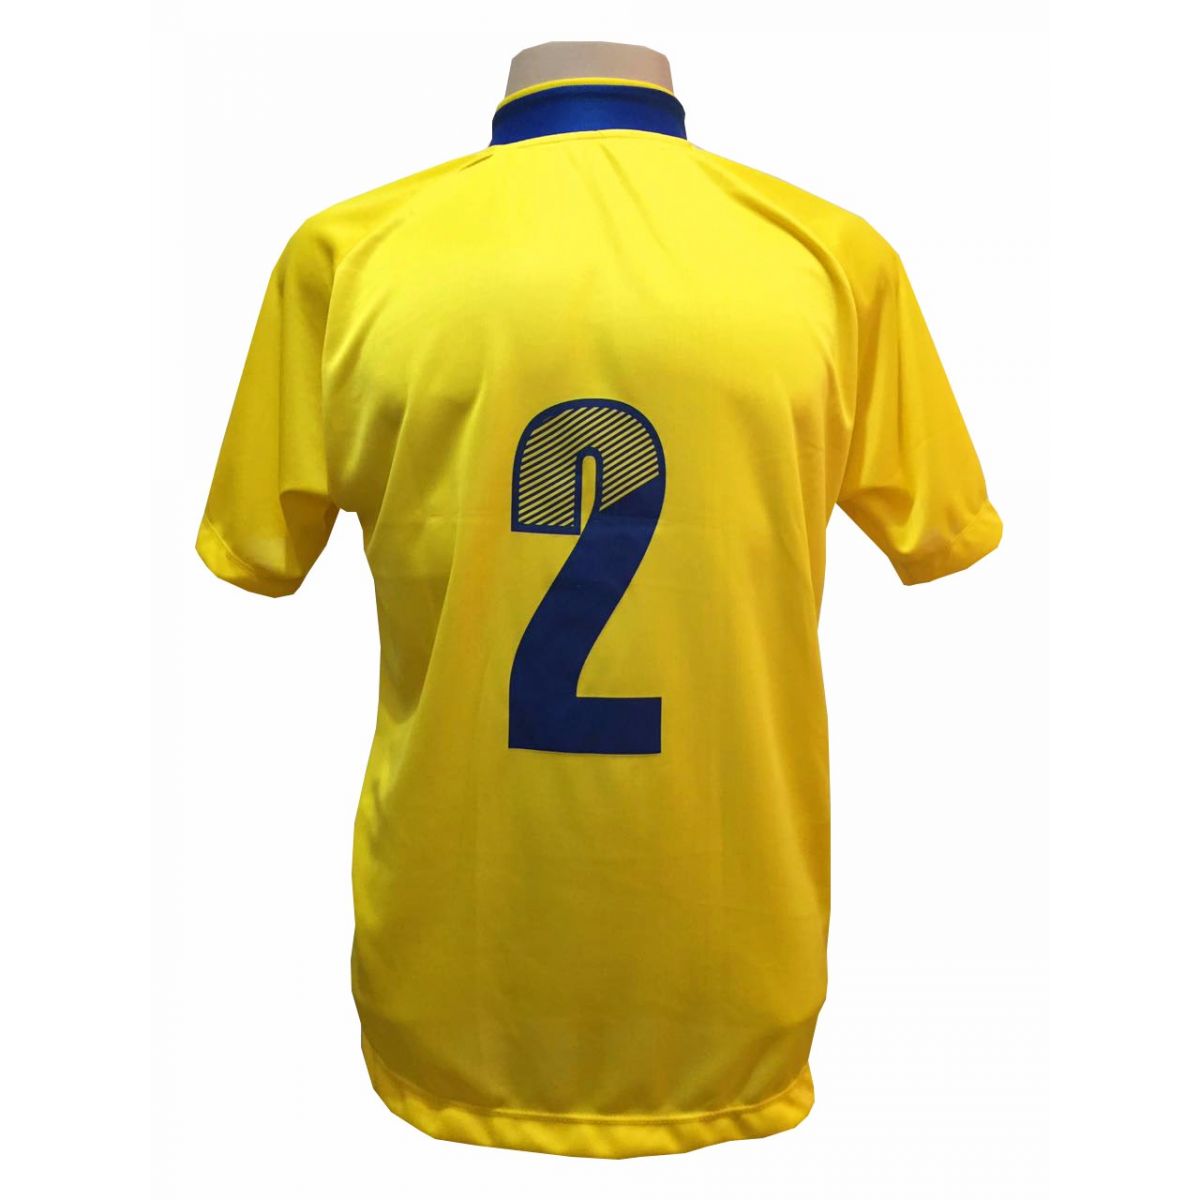 Uniforme Esportivo com 18 camisas modelo Milan Amarelo/Royal + 18 calções modelo Madrid Amarelo + Brindes